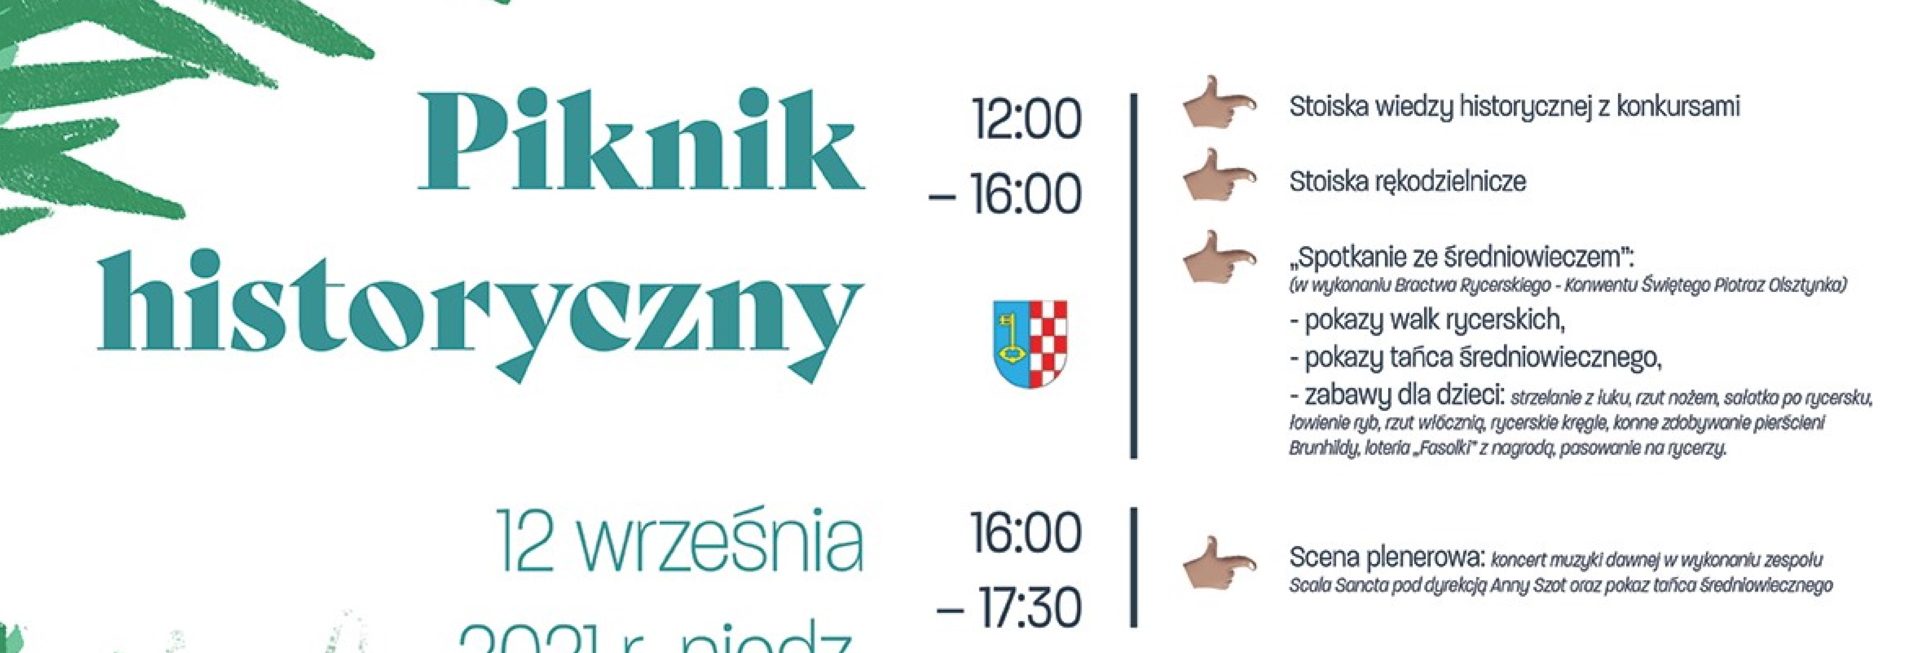 Plakat graficzny zapraszający do Iławy na piknik historyczny "Iława znana i nieznana - 75 lat polskiej Iławy" 2021. Na plakacie szczegółowy program imprezy.